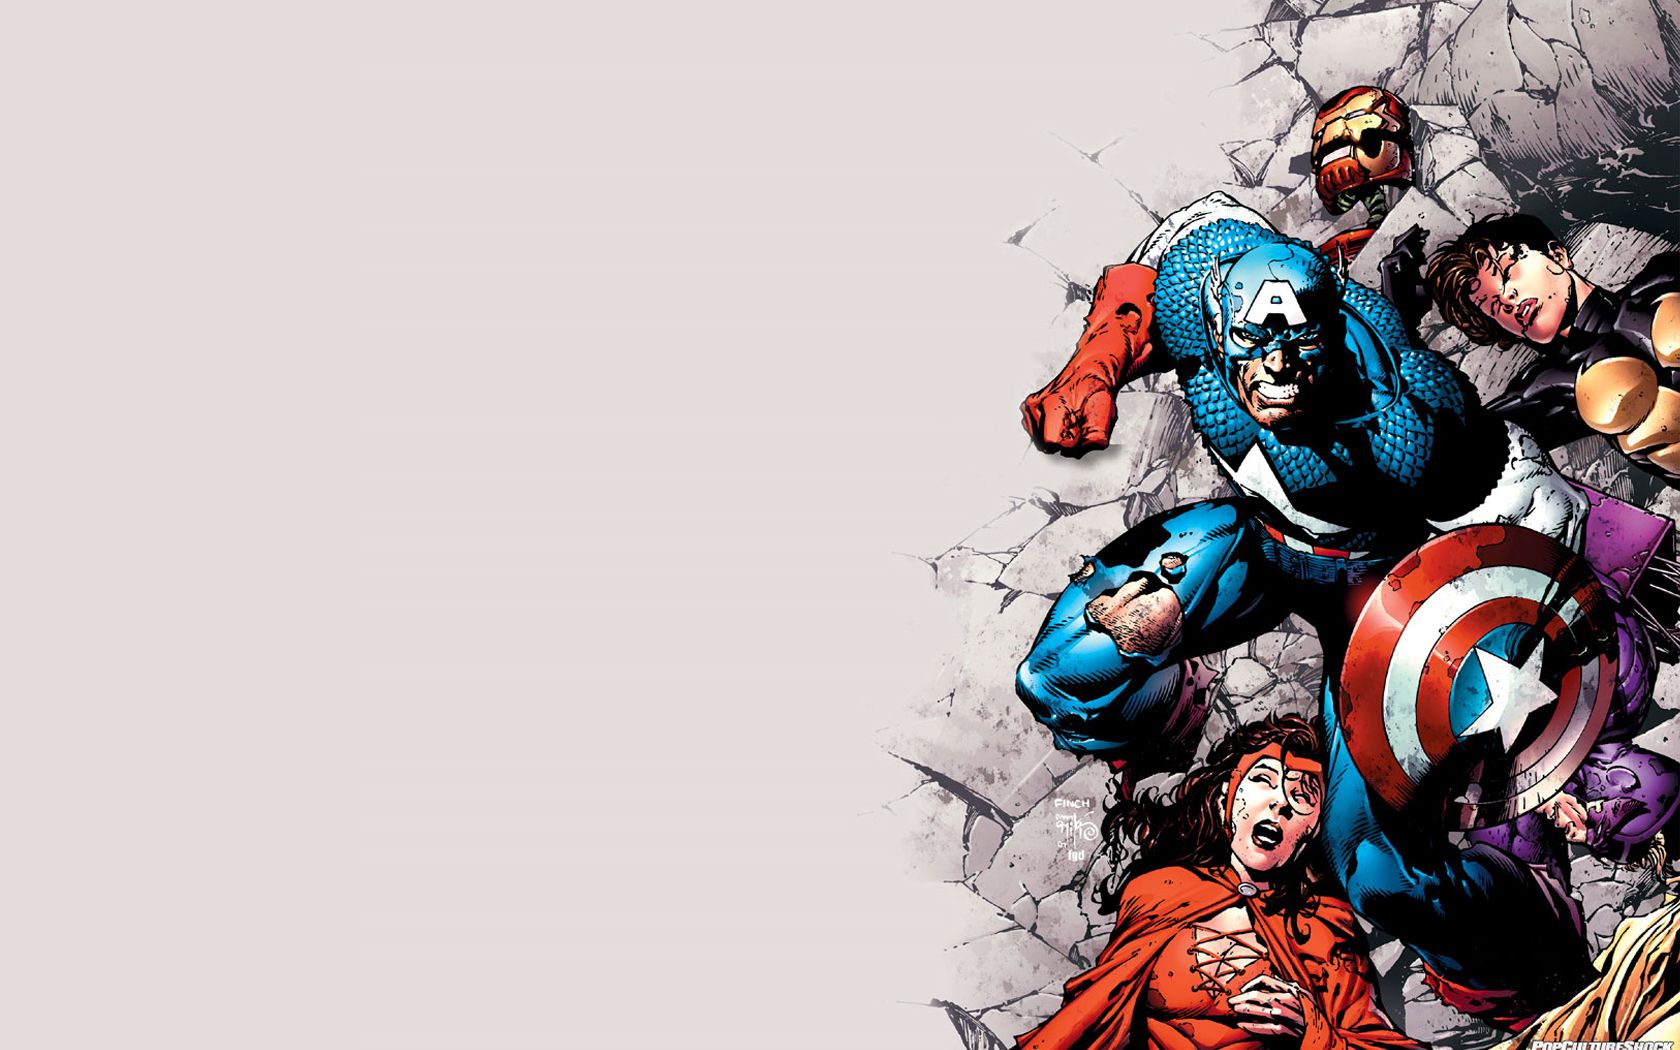 Avengers Cartoon Wallpaper on .wallpaperafari.com